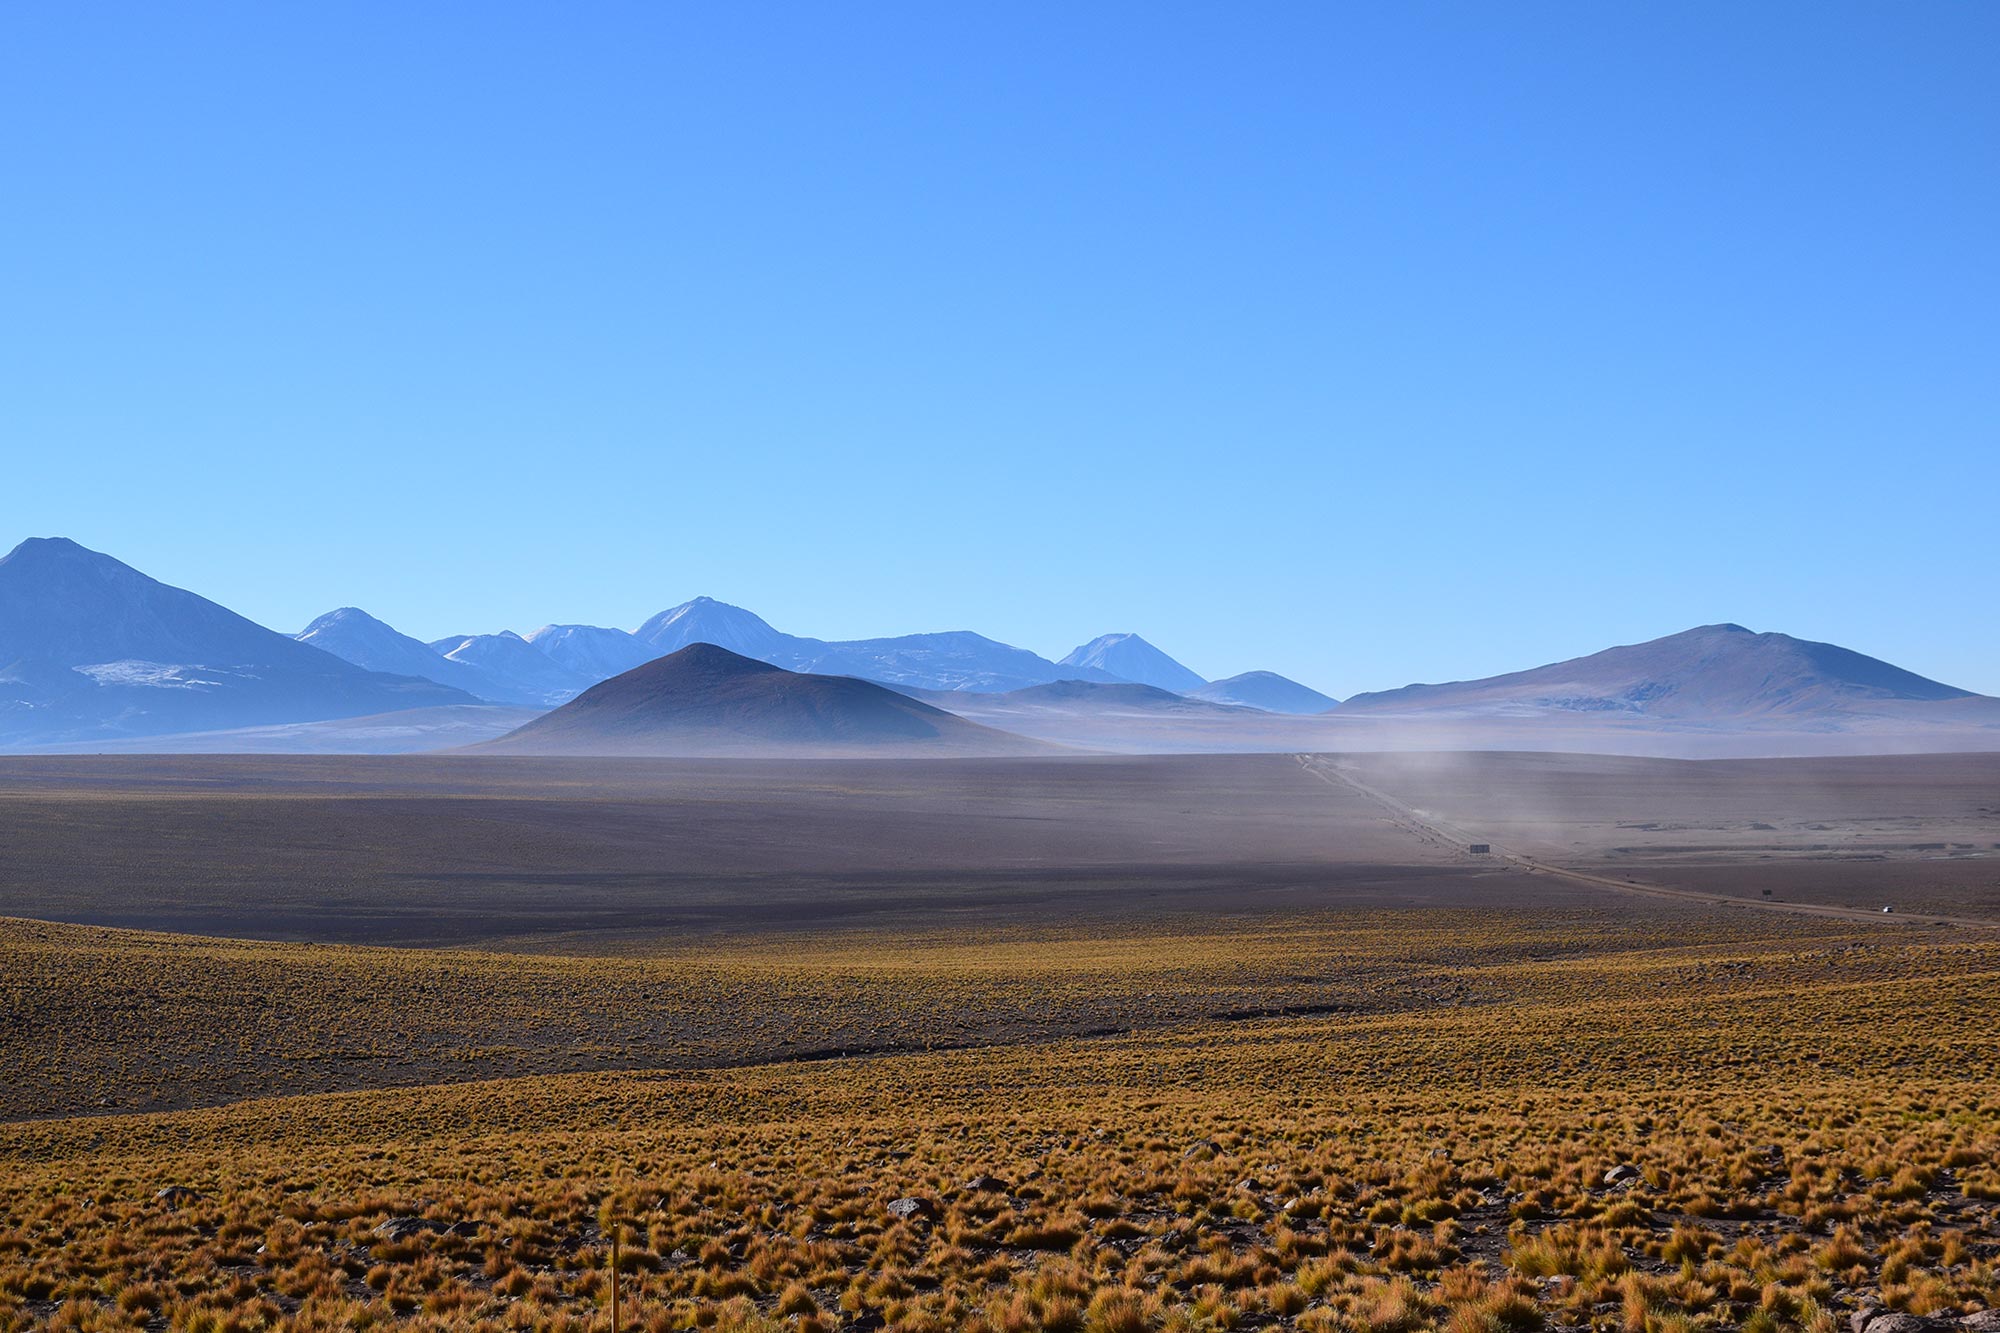 Reise in Chile in Südamerika. Landschaftsbild von der Wüste San Pedro de Atacama, im Hintergrund sind die schneebedeckten Anden zu erkennen.